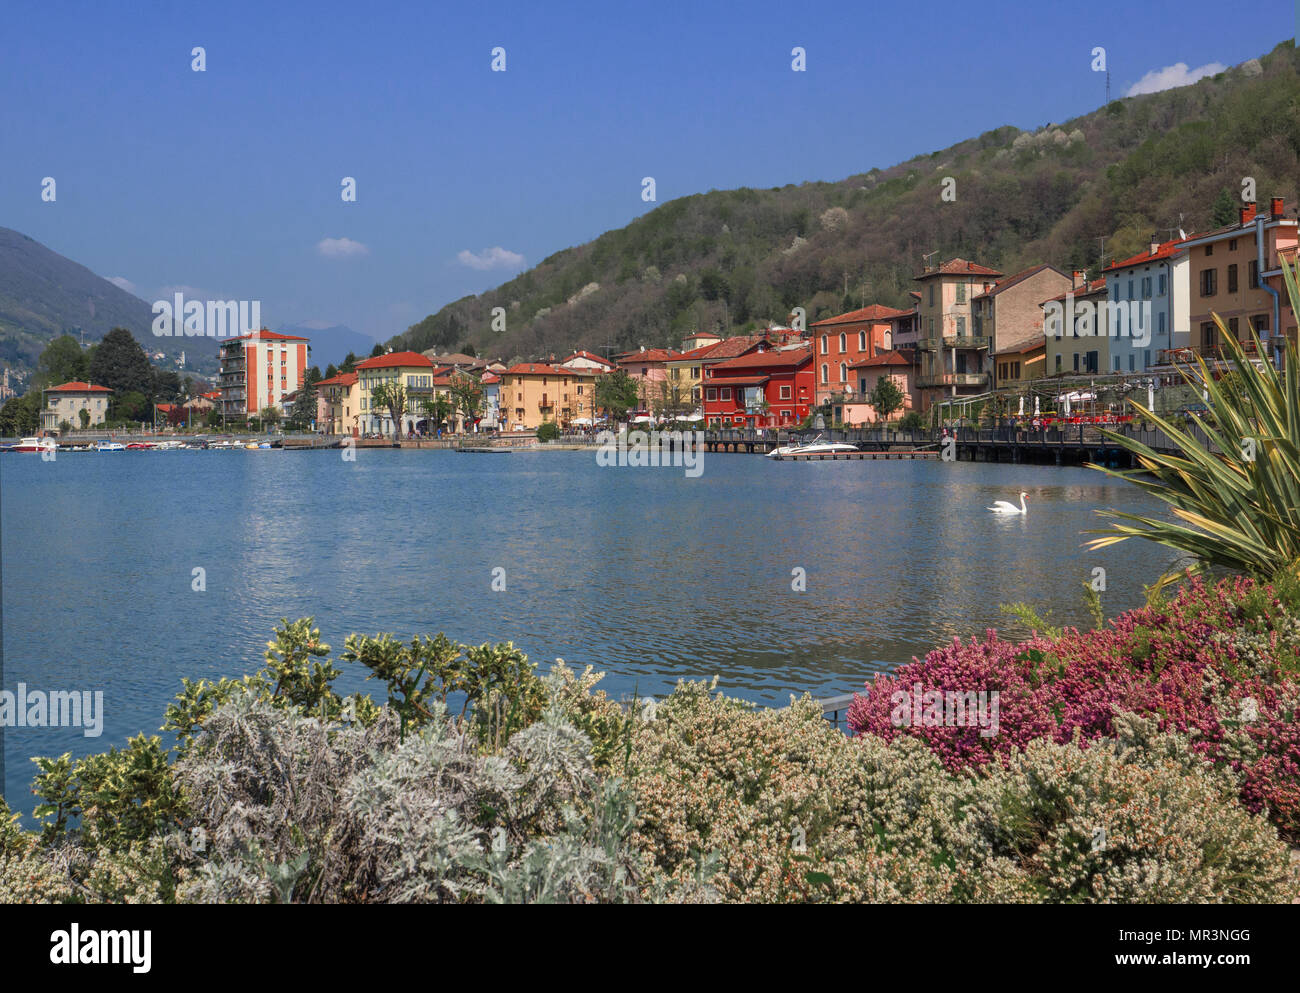 Maisons colorées à Porto Ceresio village station balnéaire populaire sur le lac de Lugano, Italie Banque D'Images